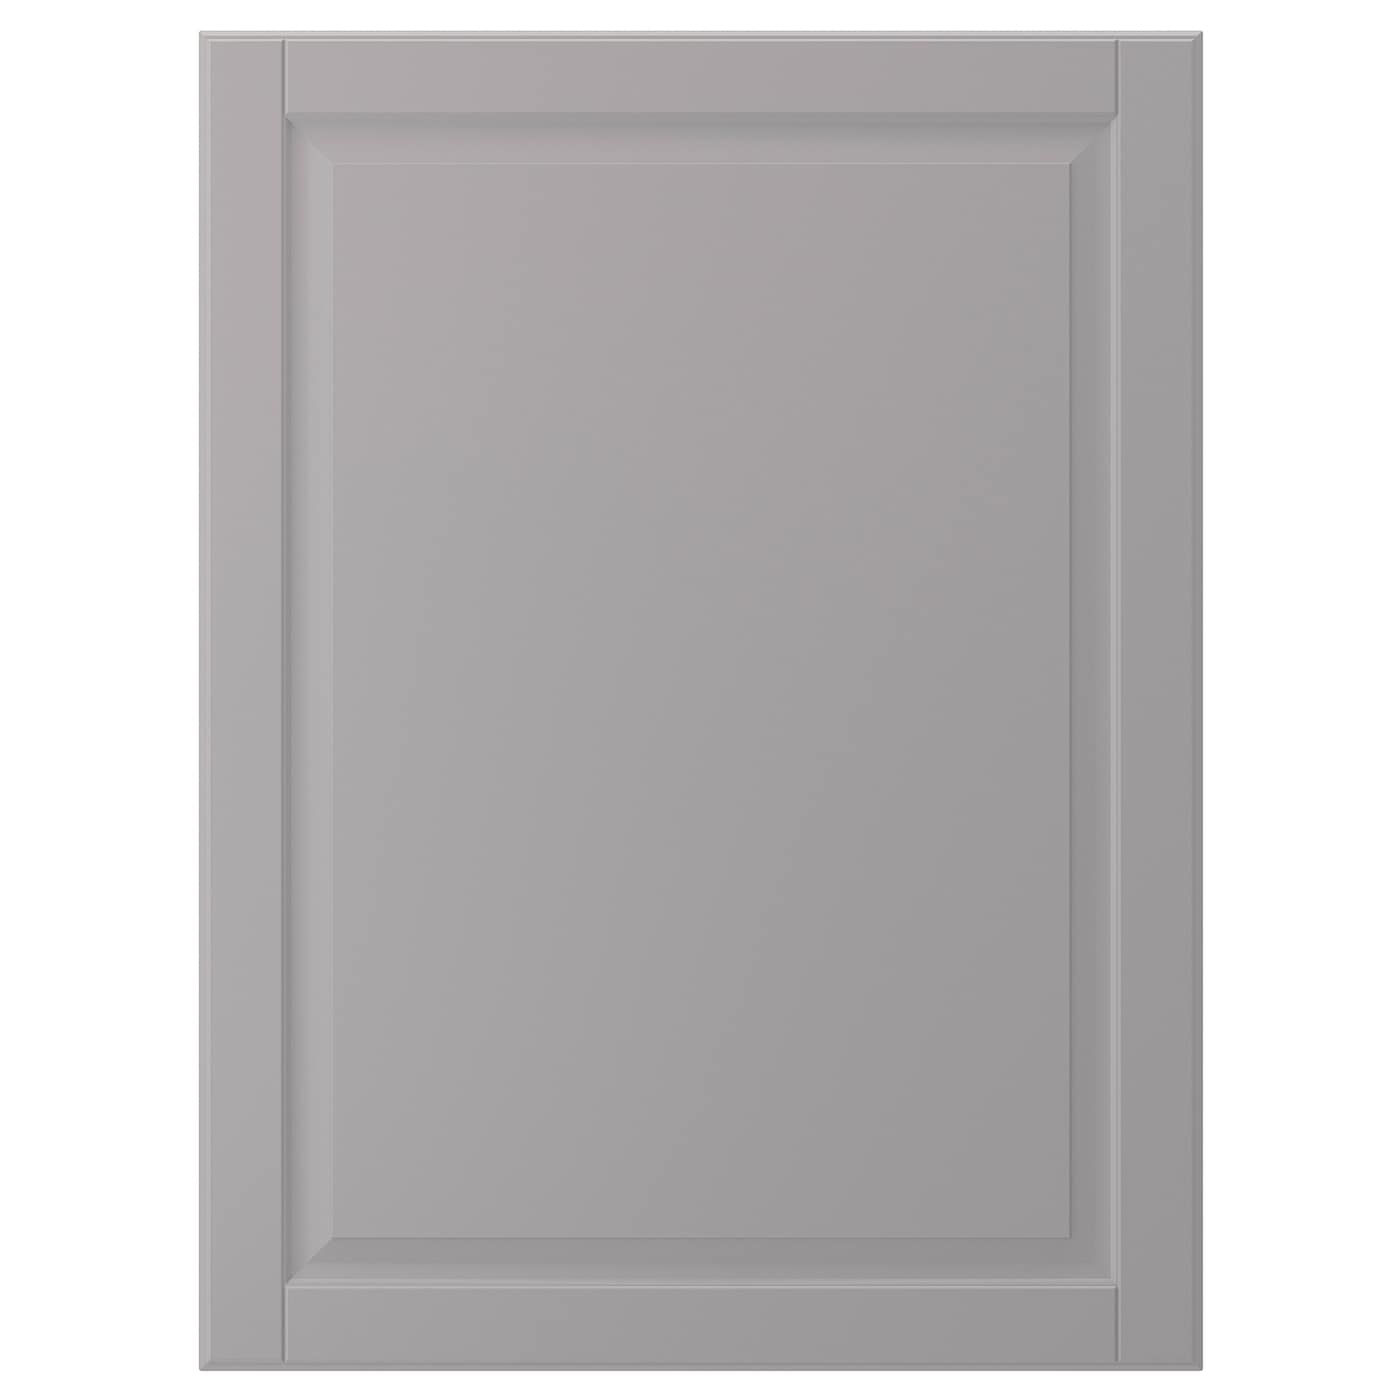 Дверца - IKEA BODBYN, 80х60 см, серый, БУДБИН ИКЕА